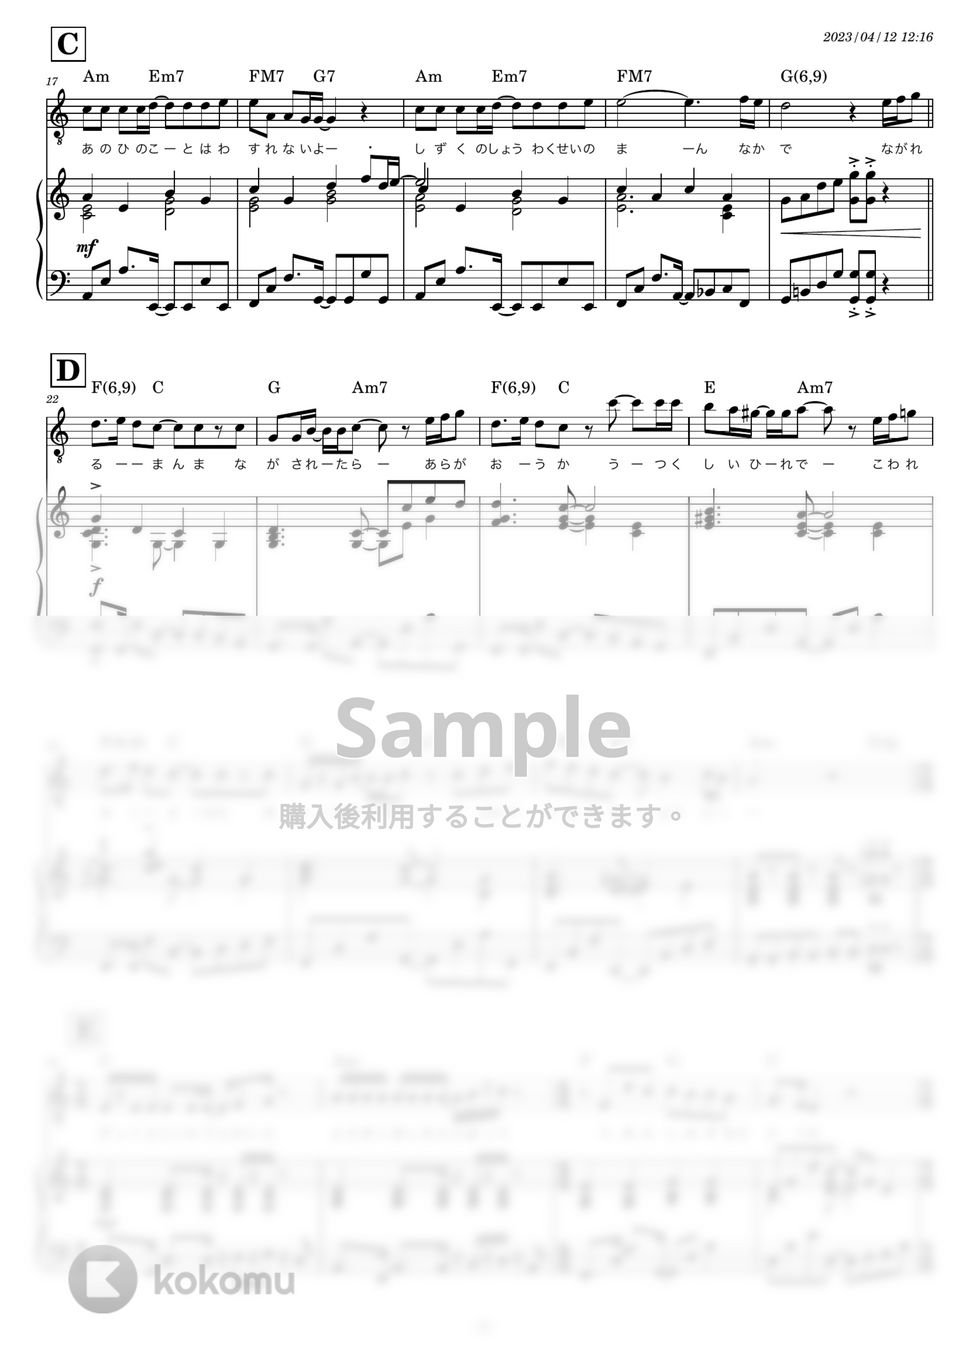 スピッツ - 美しい鰭 (キー-1 Cメジャーピアノ伴奏) by 糸川瑞樹